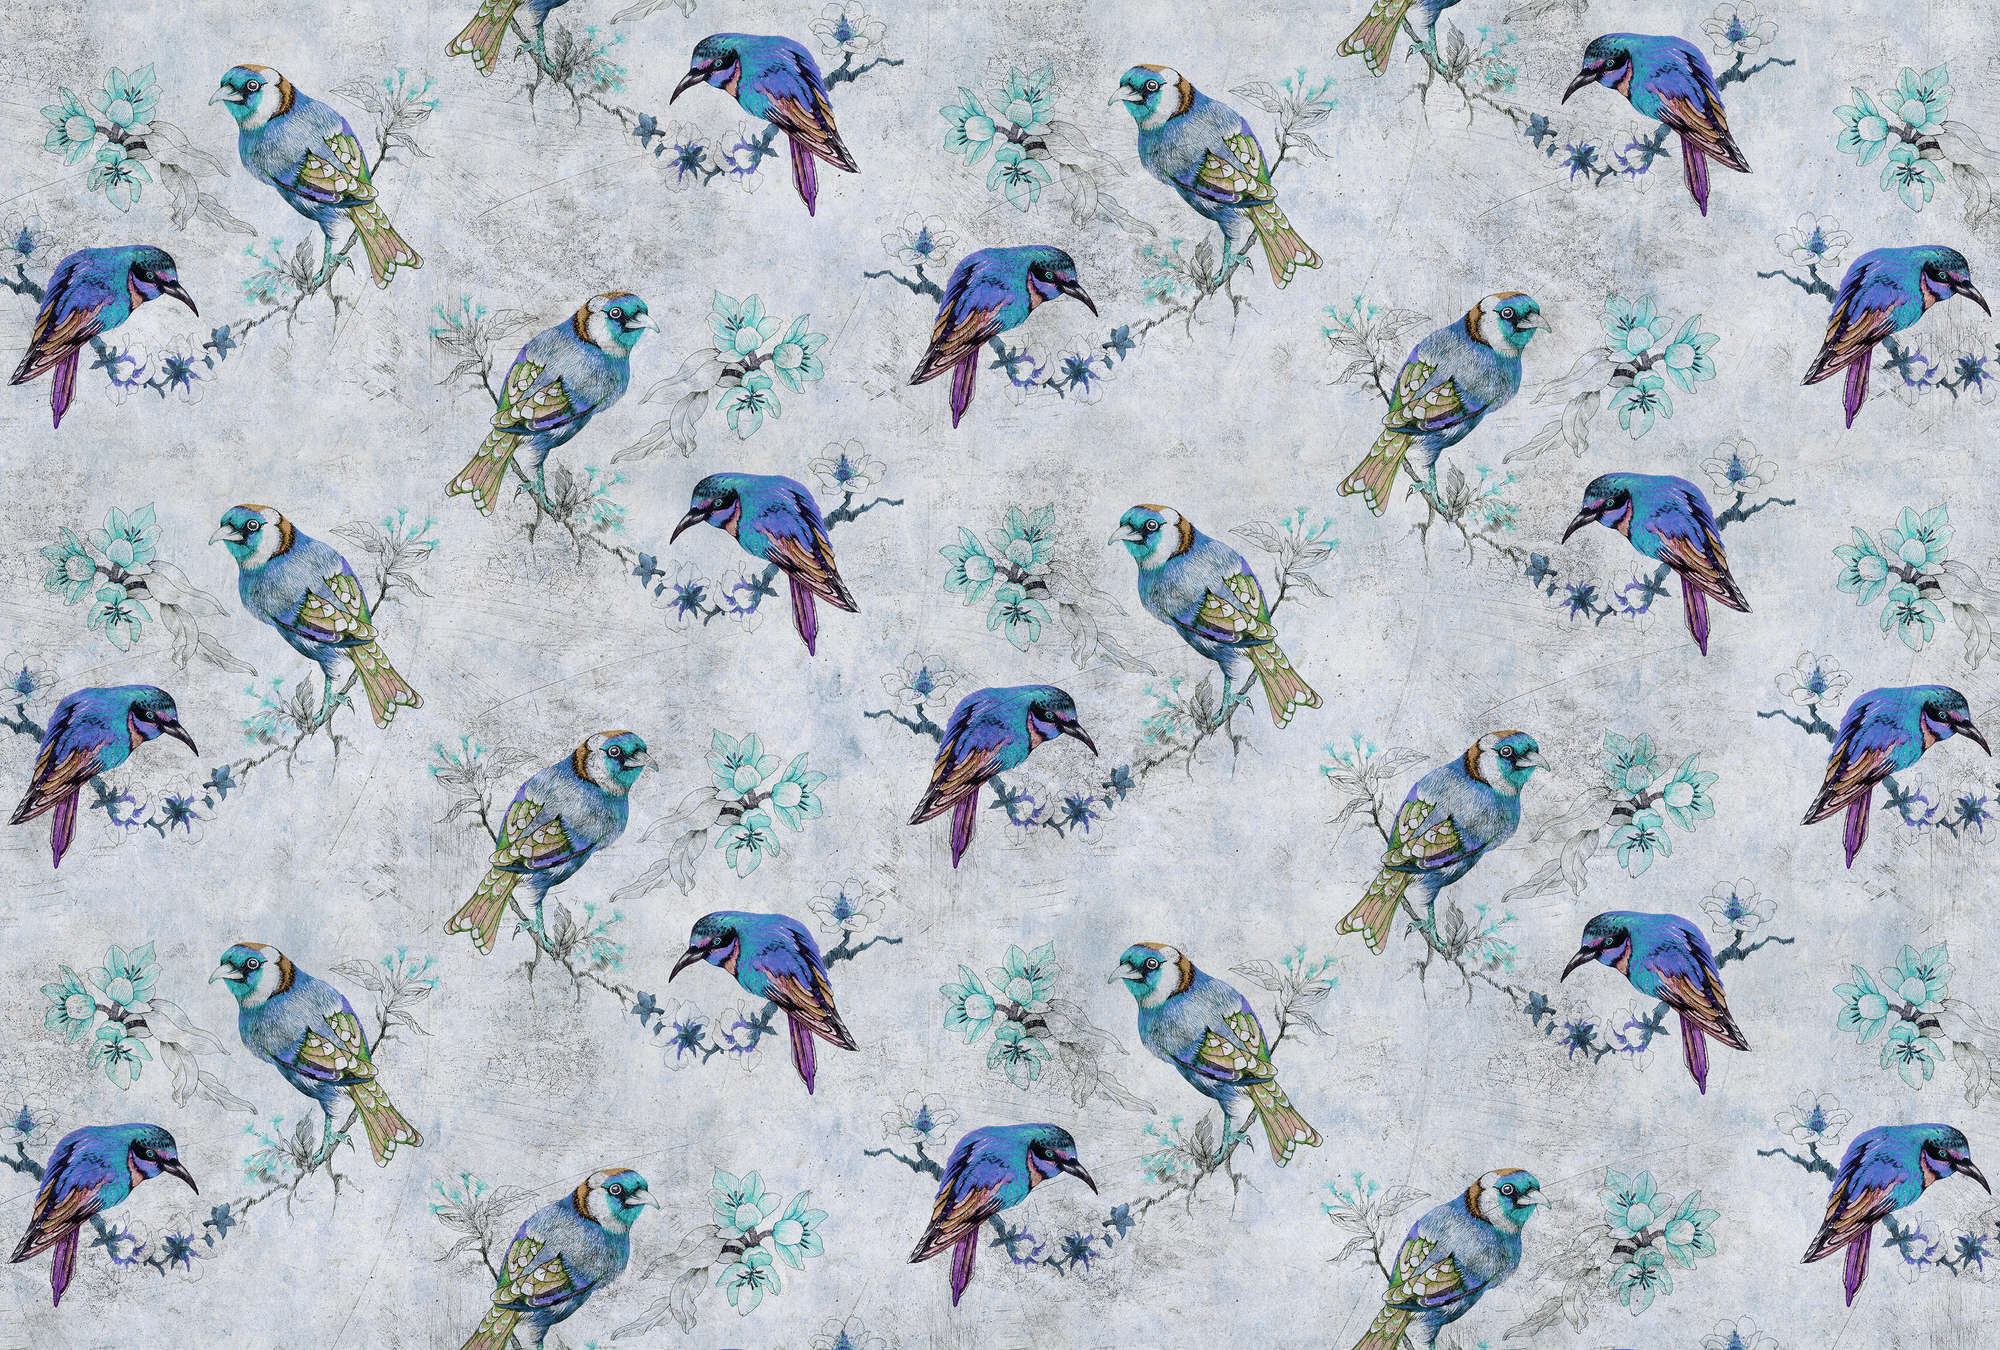             Love birds 1 - Fototapete Vogel-Muster im Zeichenstil in kratzer Struktur – Blau, Grau | Struktur Vlies
        